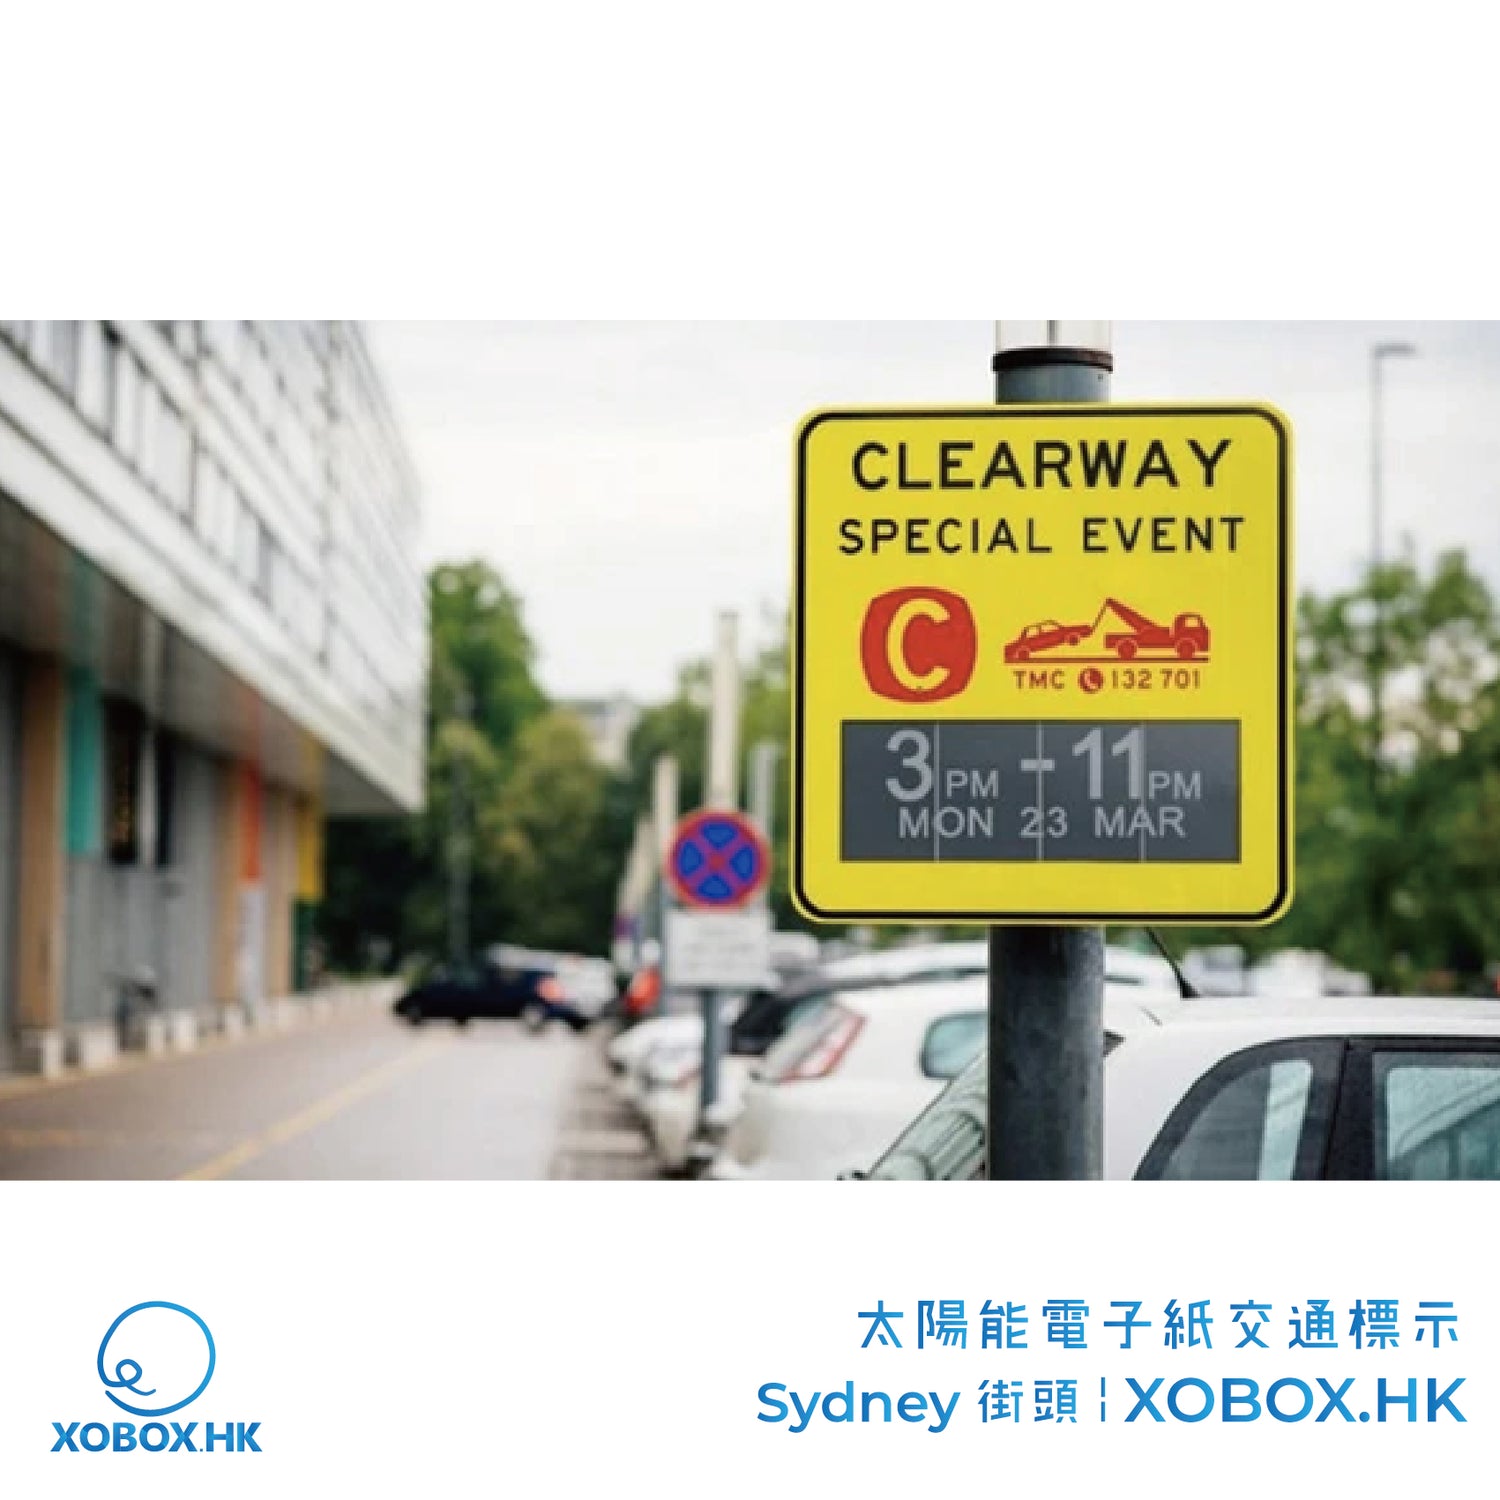 更環保便利的太陽能電子紙交通號誌走入Sydney 街頭 | XOBOX.HK